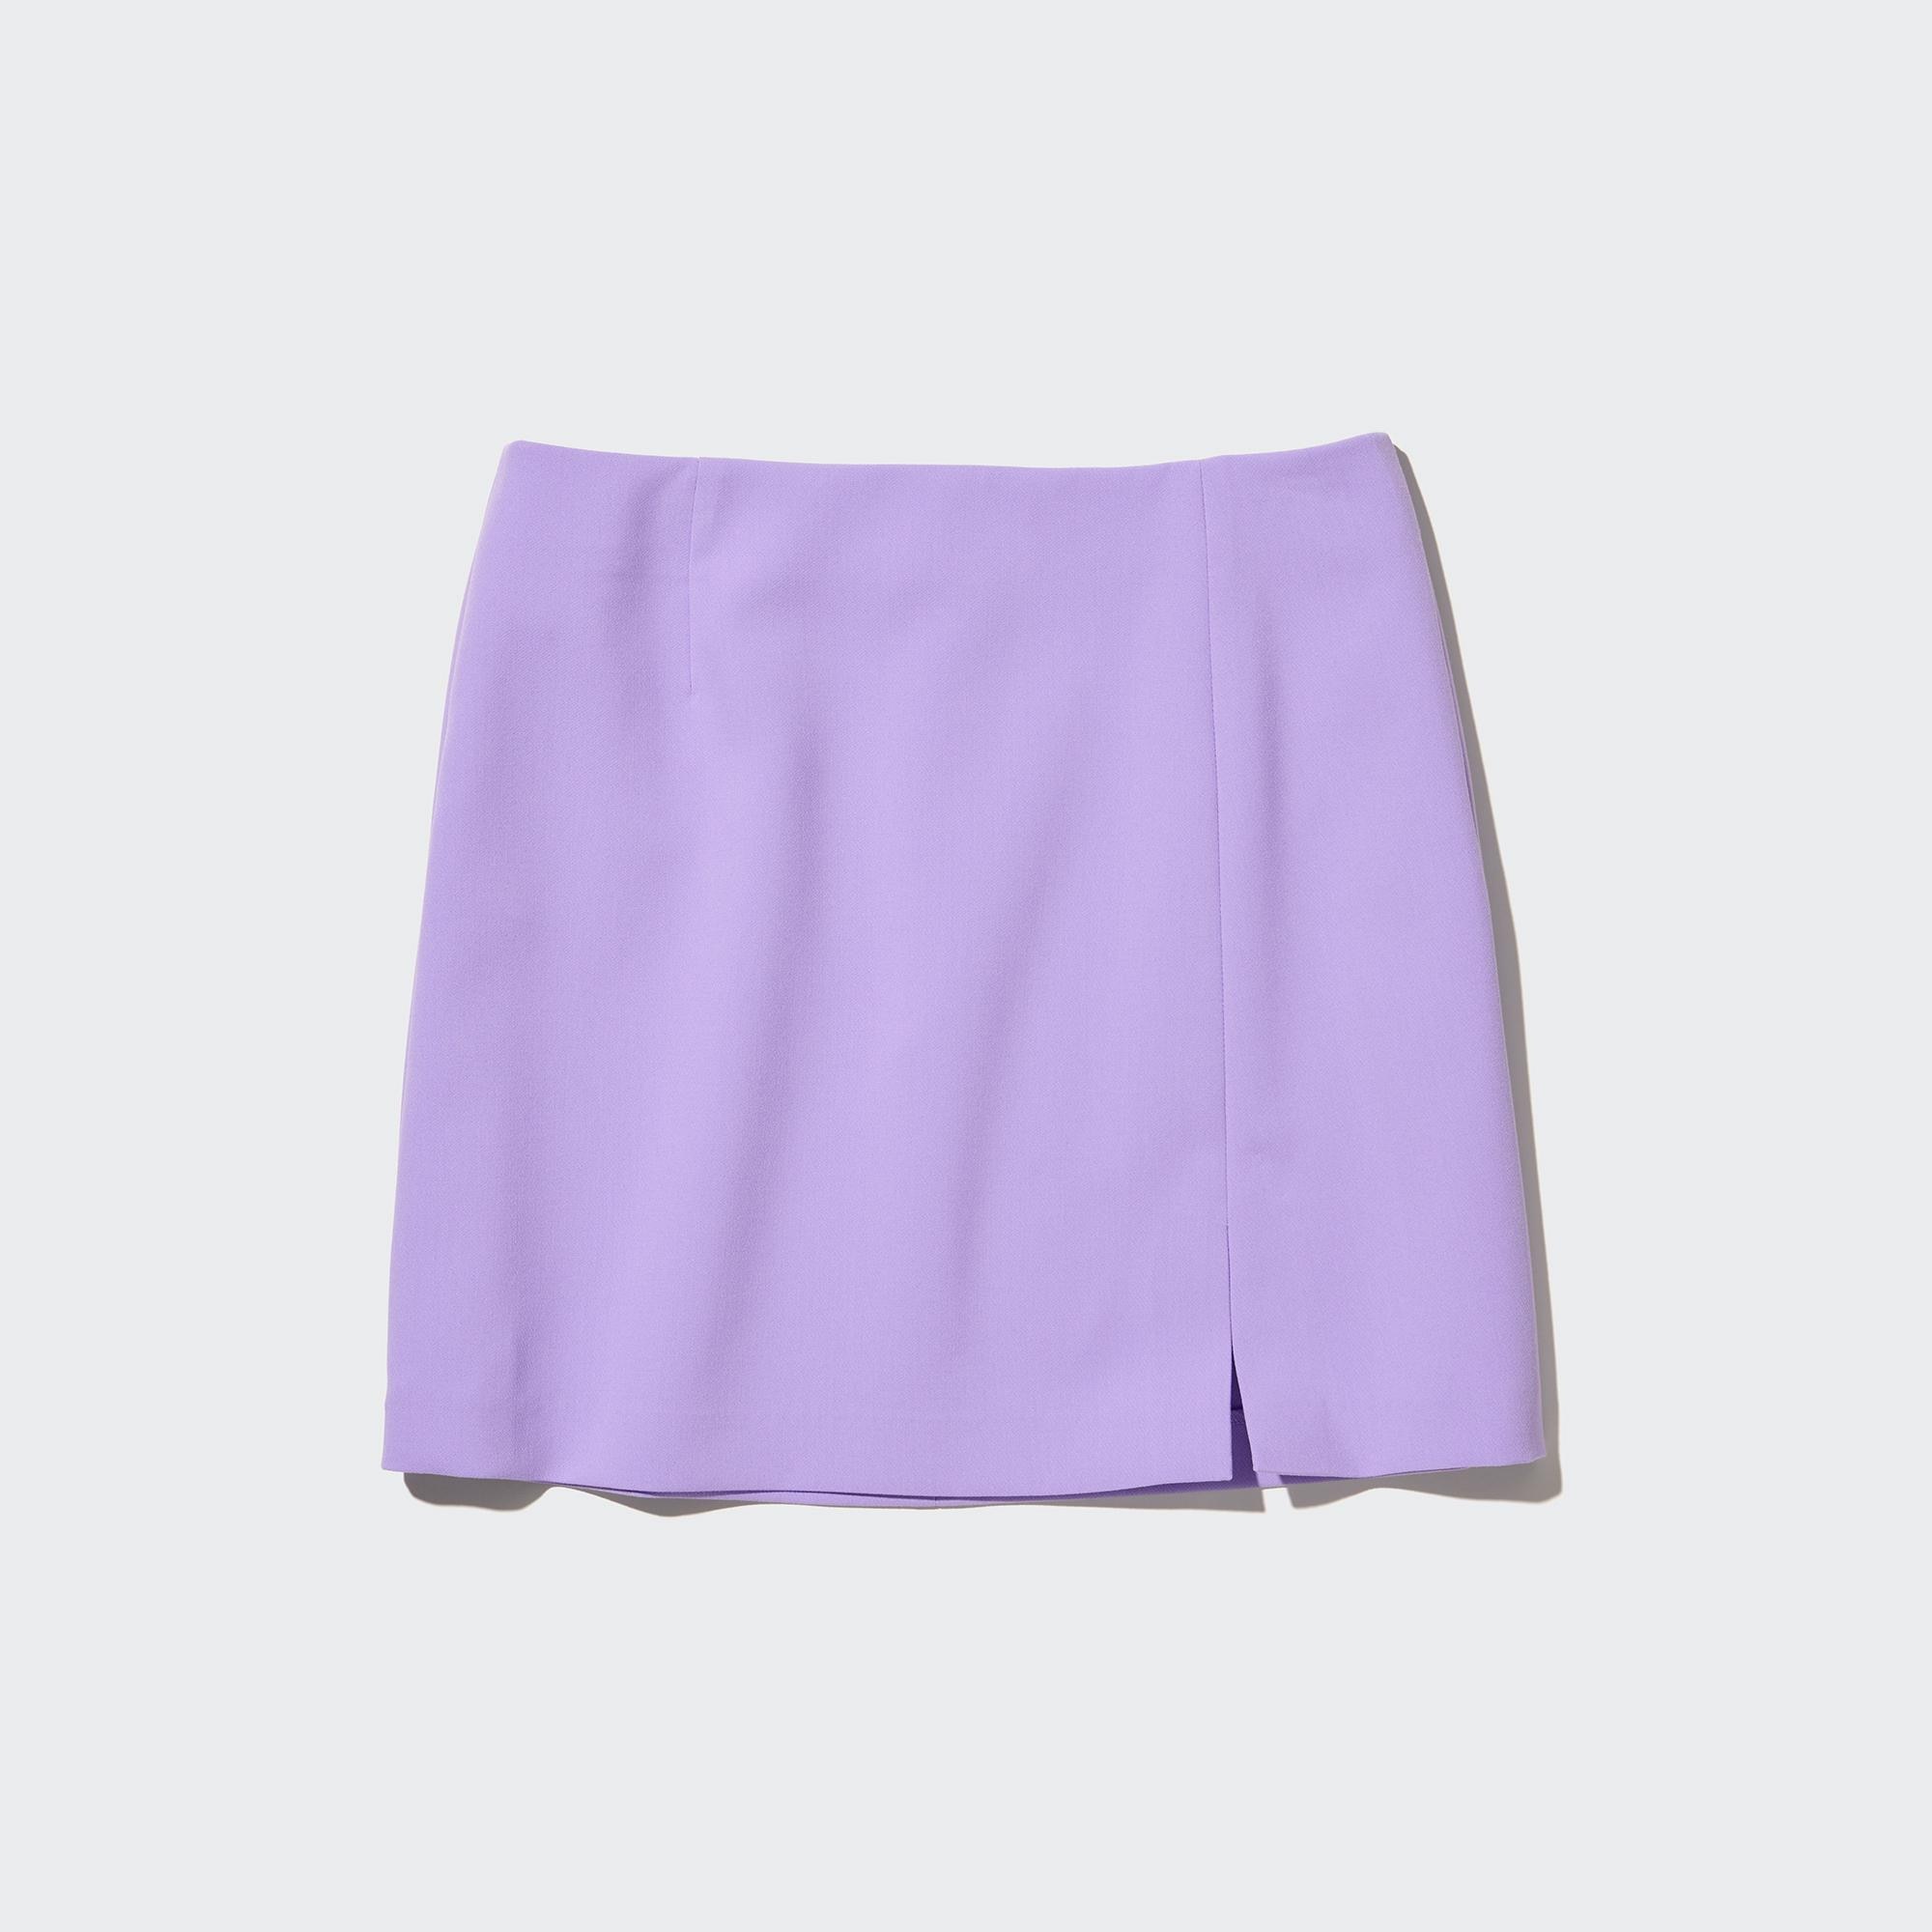 Check styling ideas for「Slit Mini Skirt」